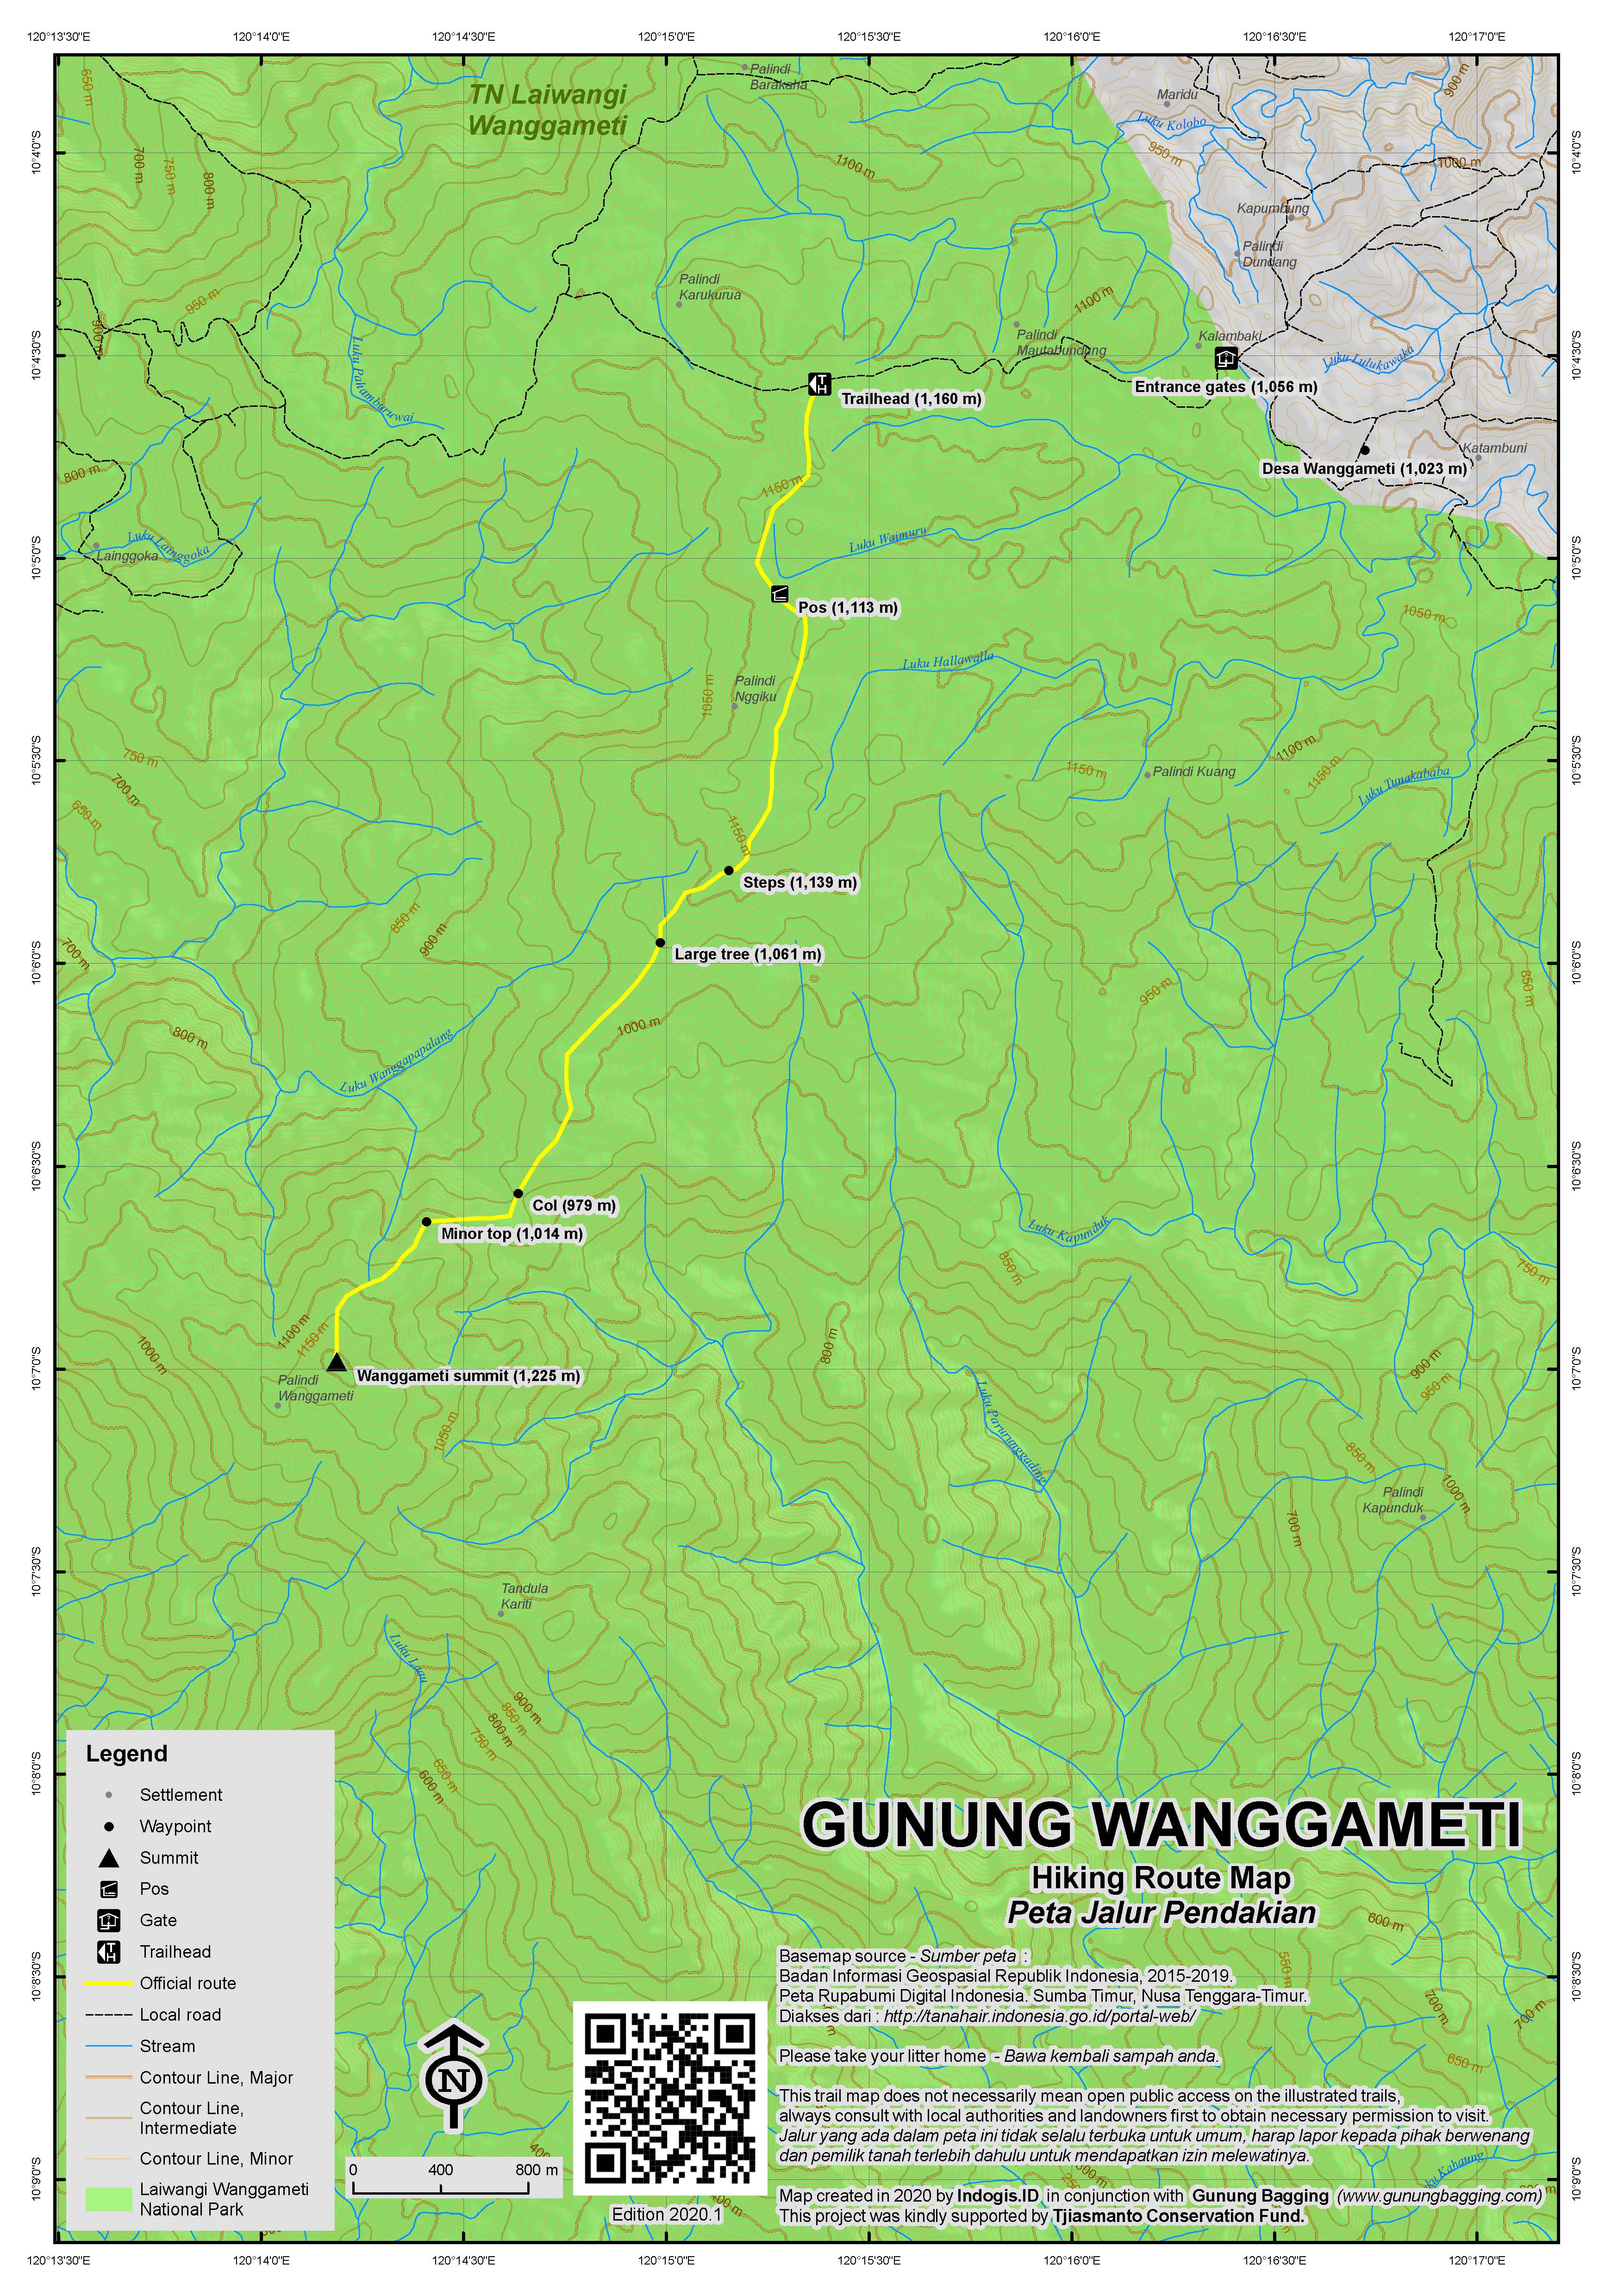 Peta Jalur Pendakian Gunung Wanggameti